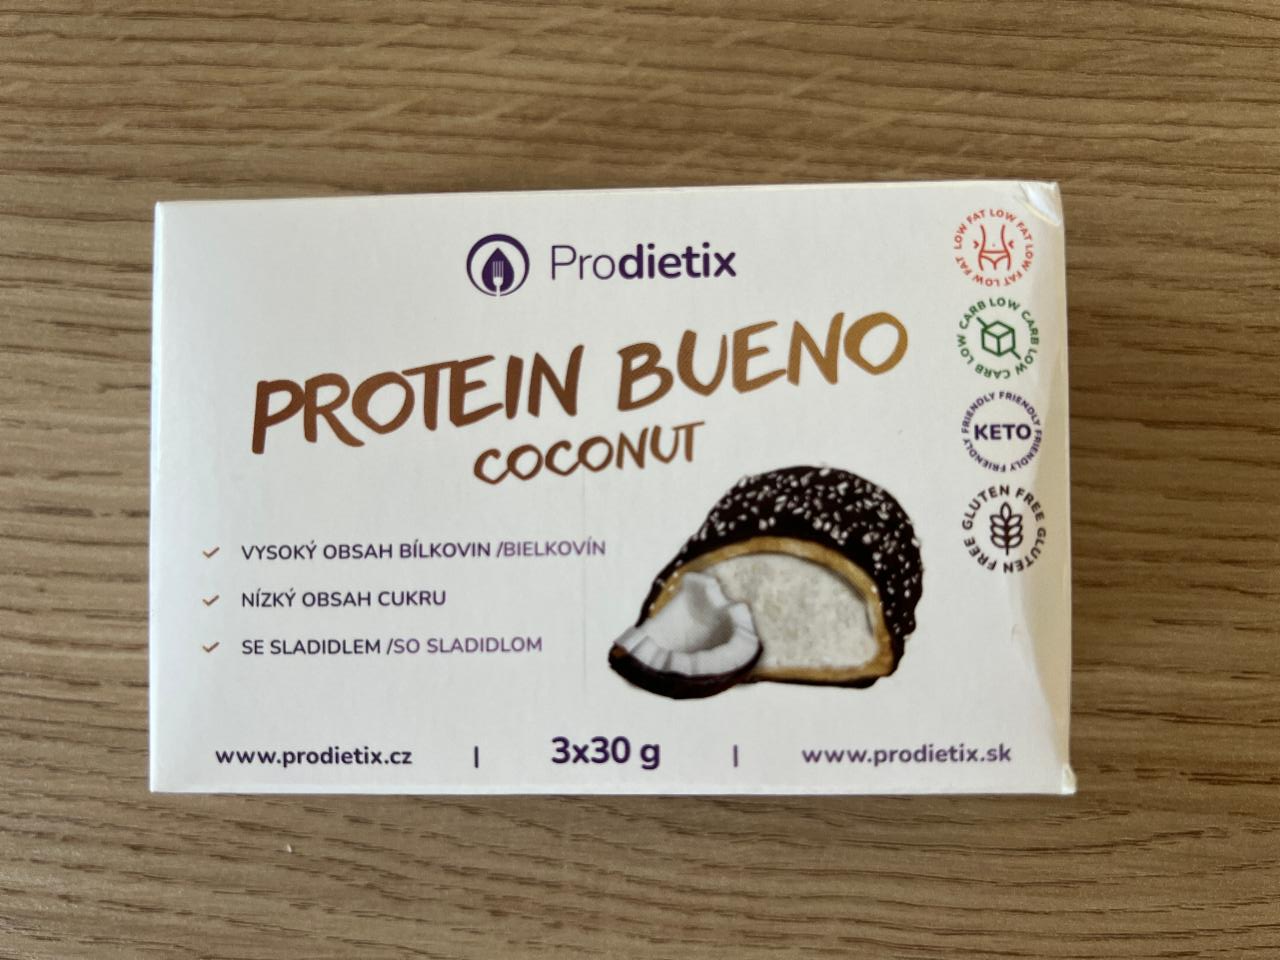 Fotografie - Protein Bueno Coconut Prodietix